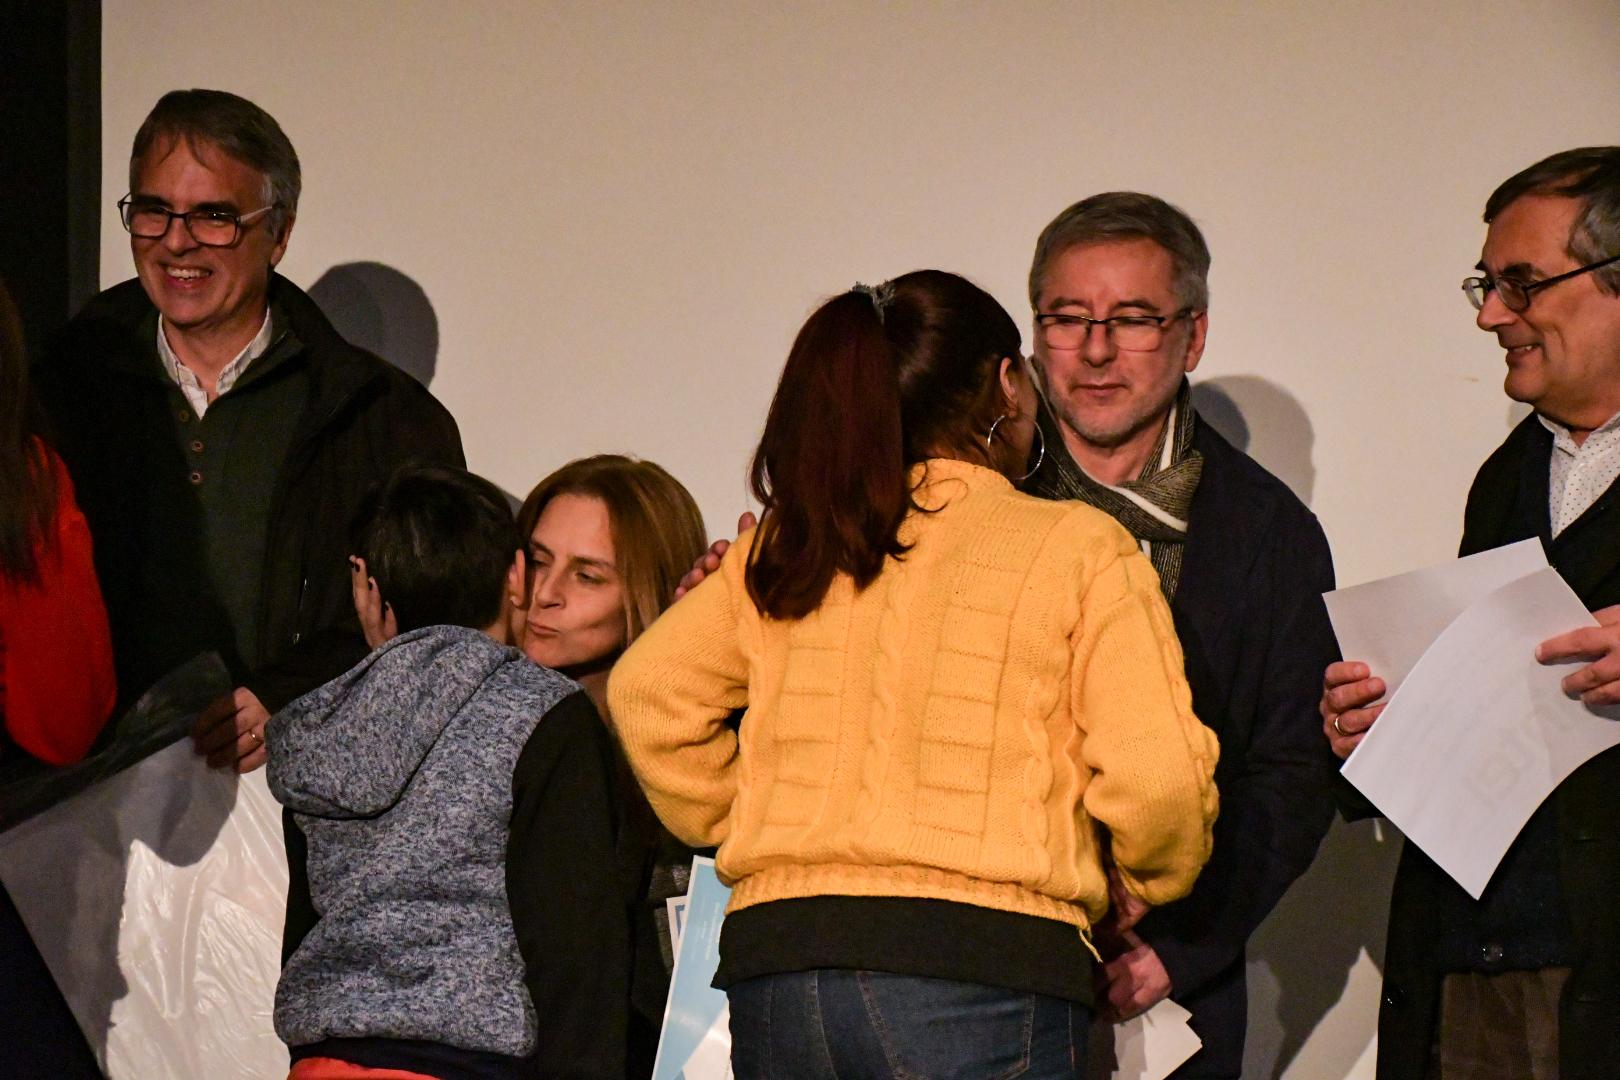 Entrega de premios del Programa "Familias Fuertes" en la Sala Auditorio de la ciudad de Las Piedras